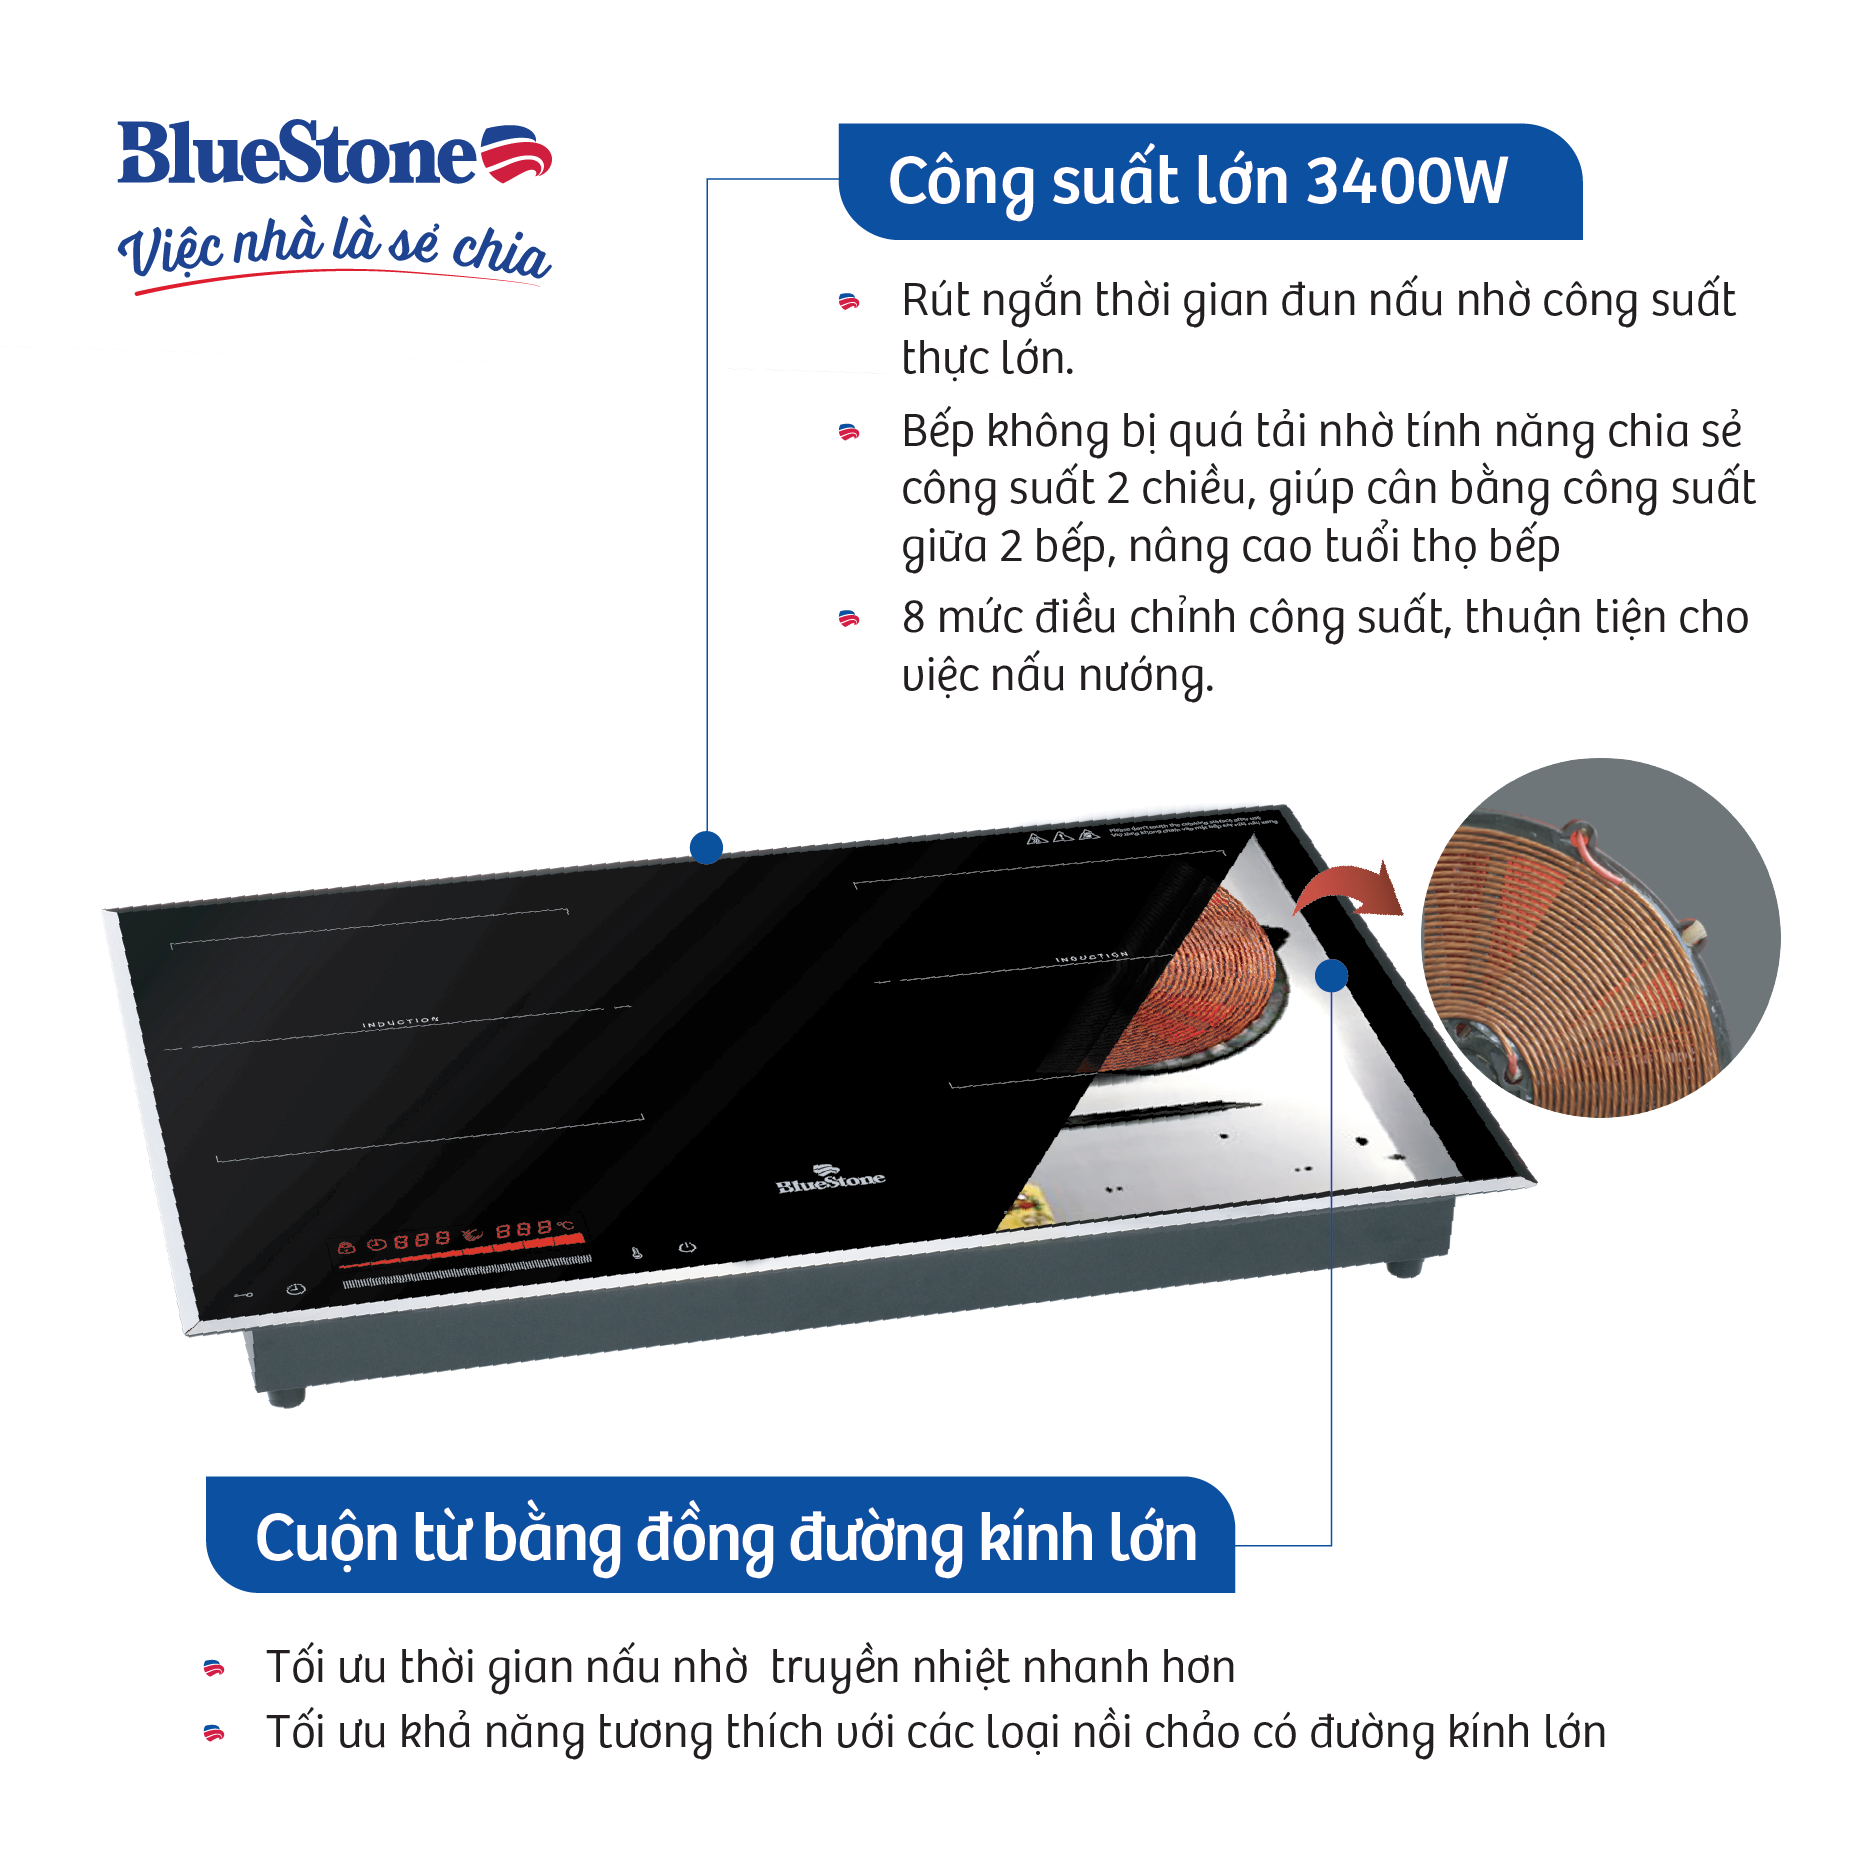 Bếp hỗn hợp quang từ BlueStone ICB-6917 (3400W - Malaysia)- Hàng chính hãng